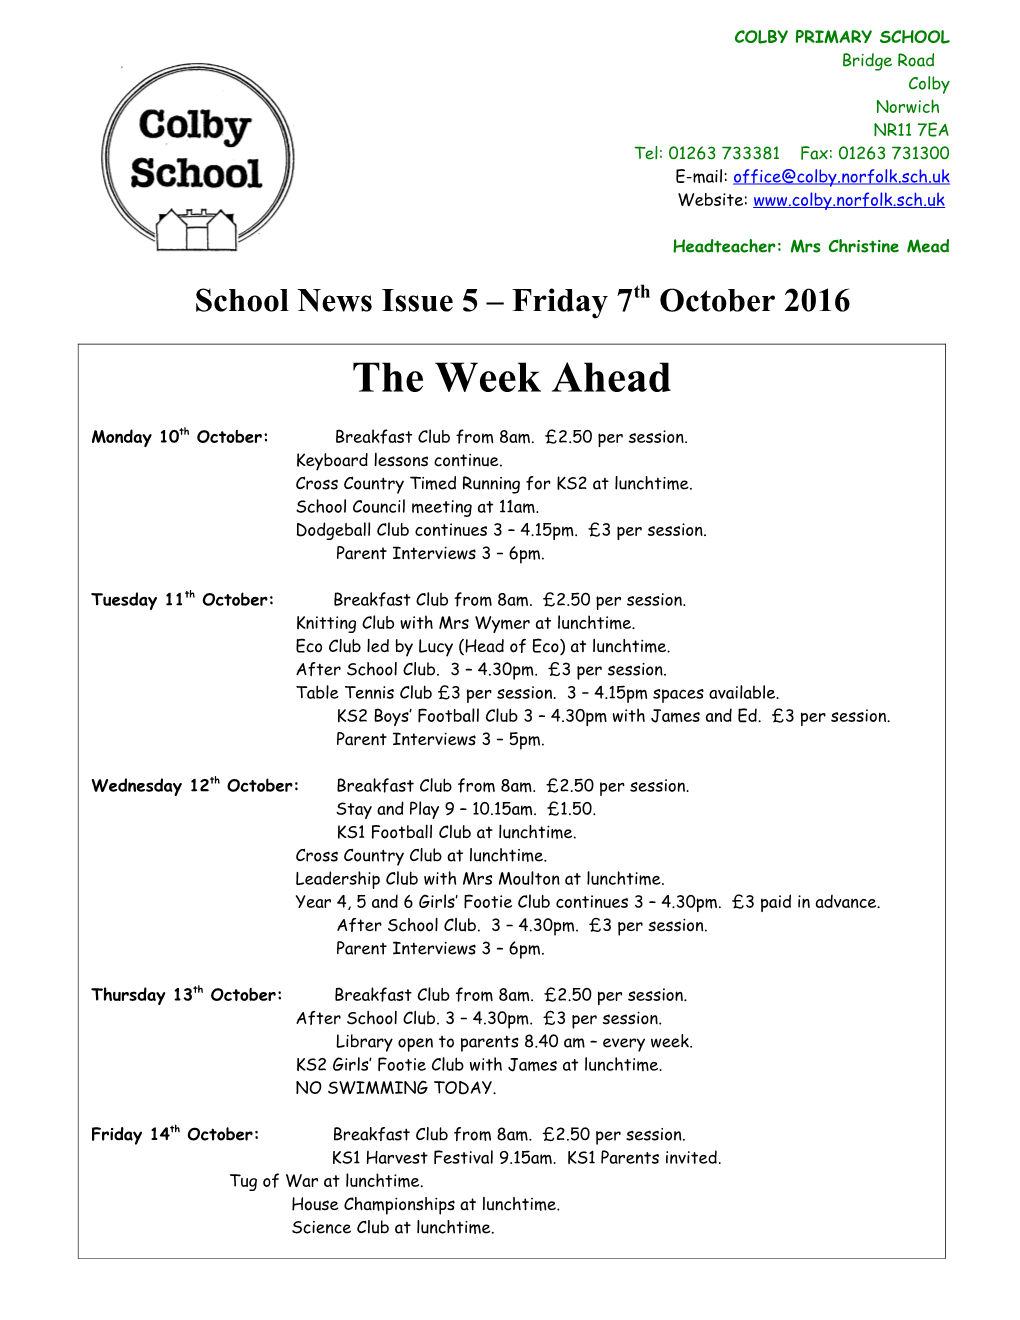 School News Issue 5 Friday 7Th October 2016